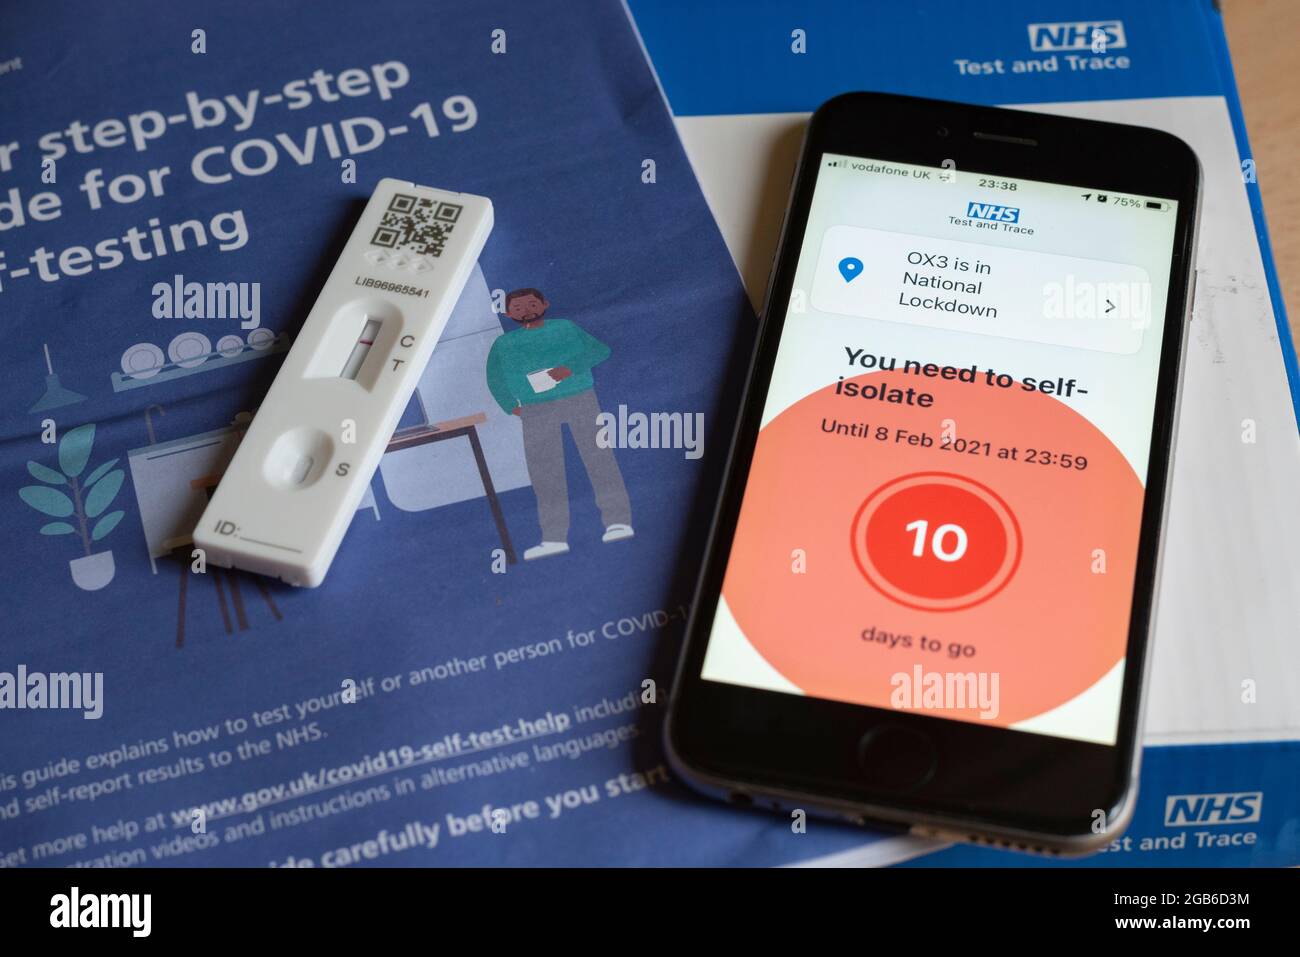 Un iPhone que muestra un mensaje de aislamiento durante la pandemia de Covid-19 en 2021, con una prueba de Covid negativa y un folleto. Foto de stock